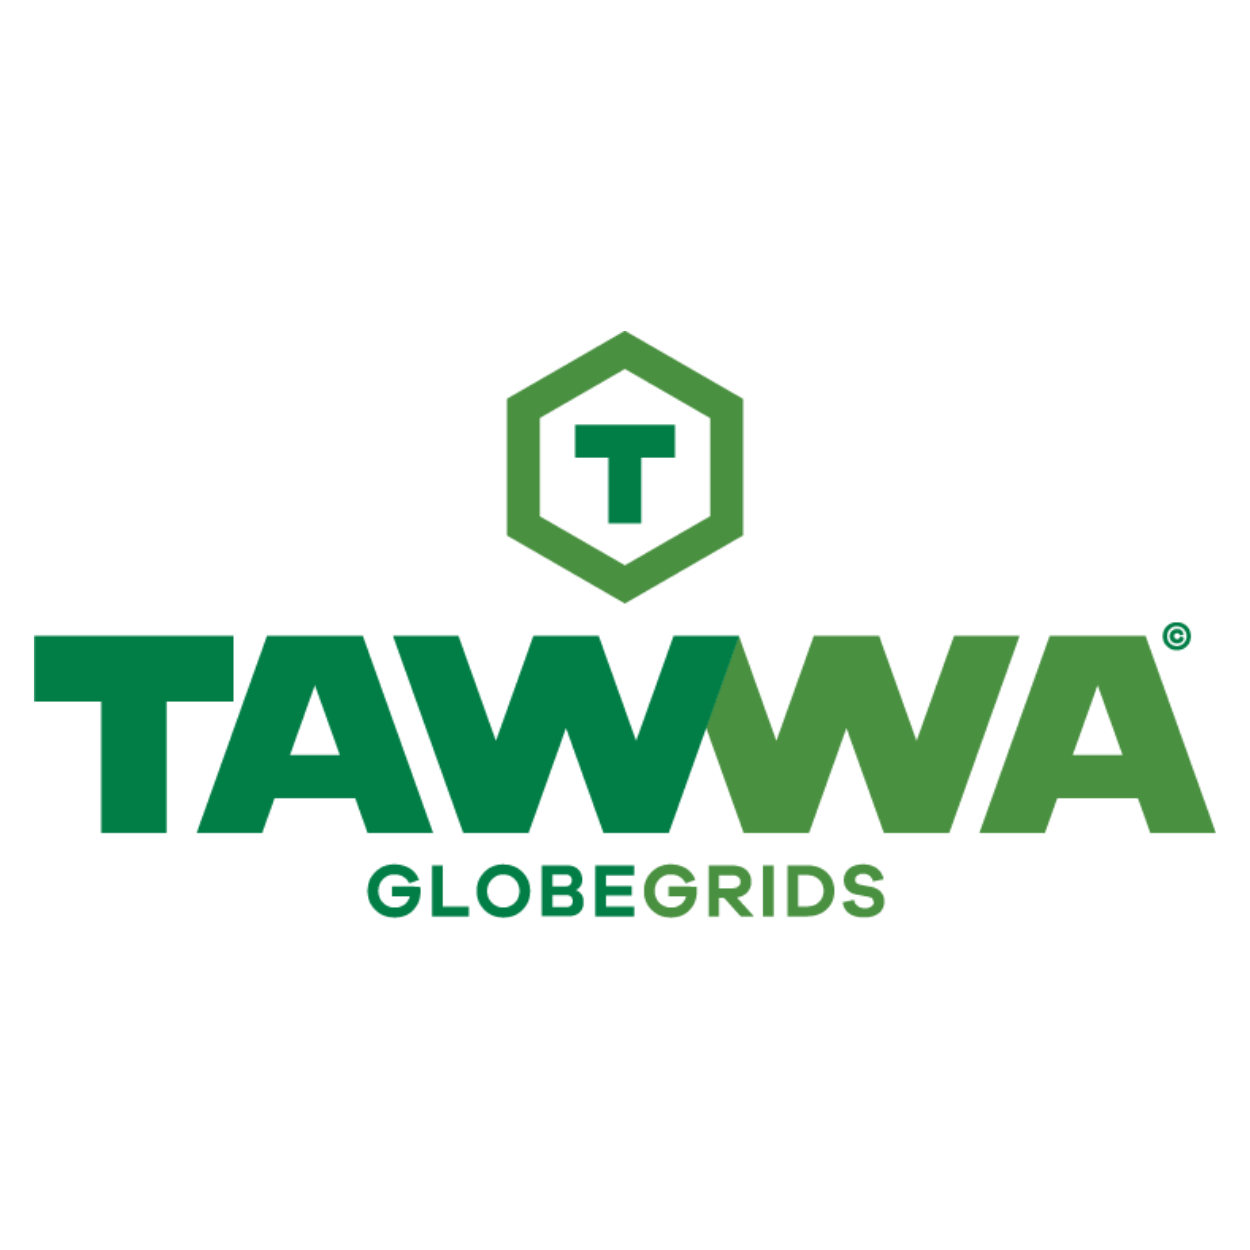 TAWWA GlobeGrid